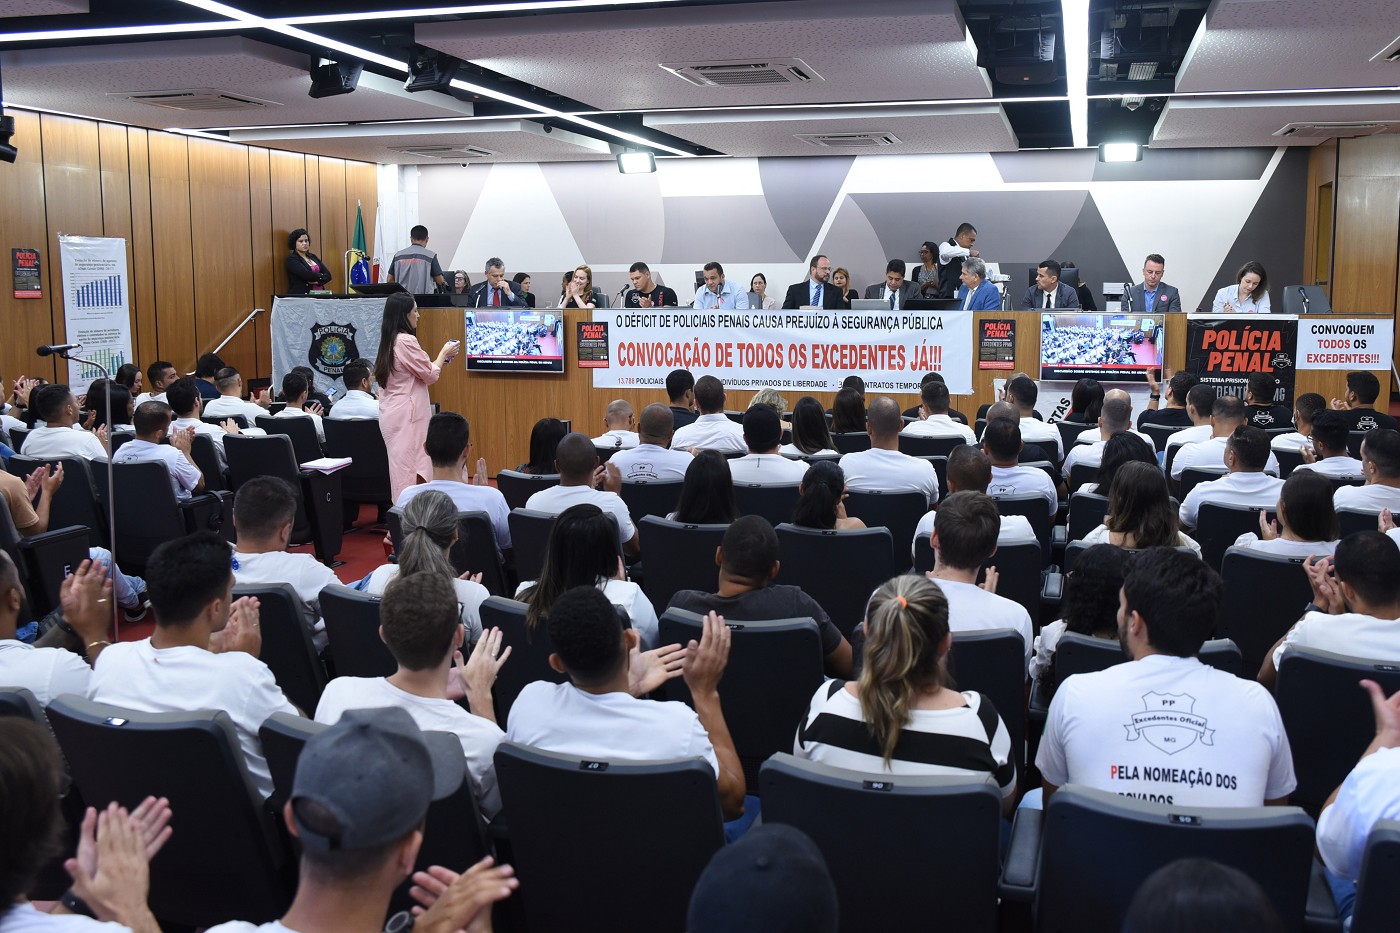 Comissão de Segurança Pública - debate sobre a viabilidade da convocação dos excedentes do concurso público da Polícia Penal de Minas Gerais